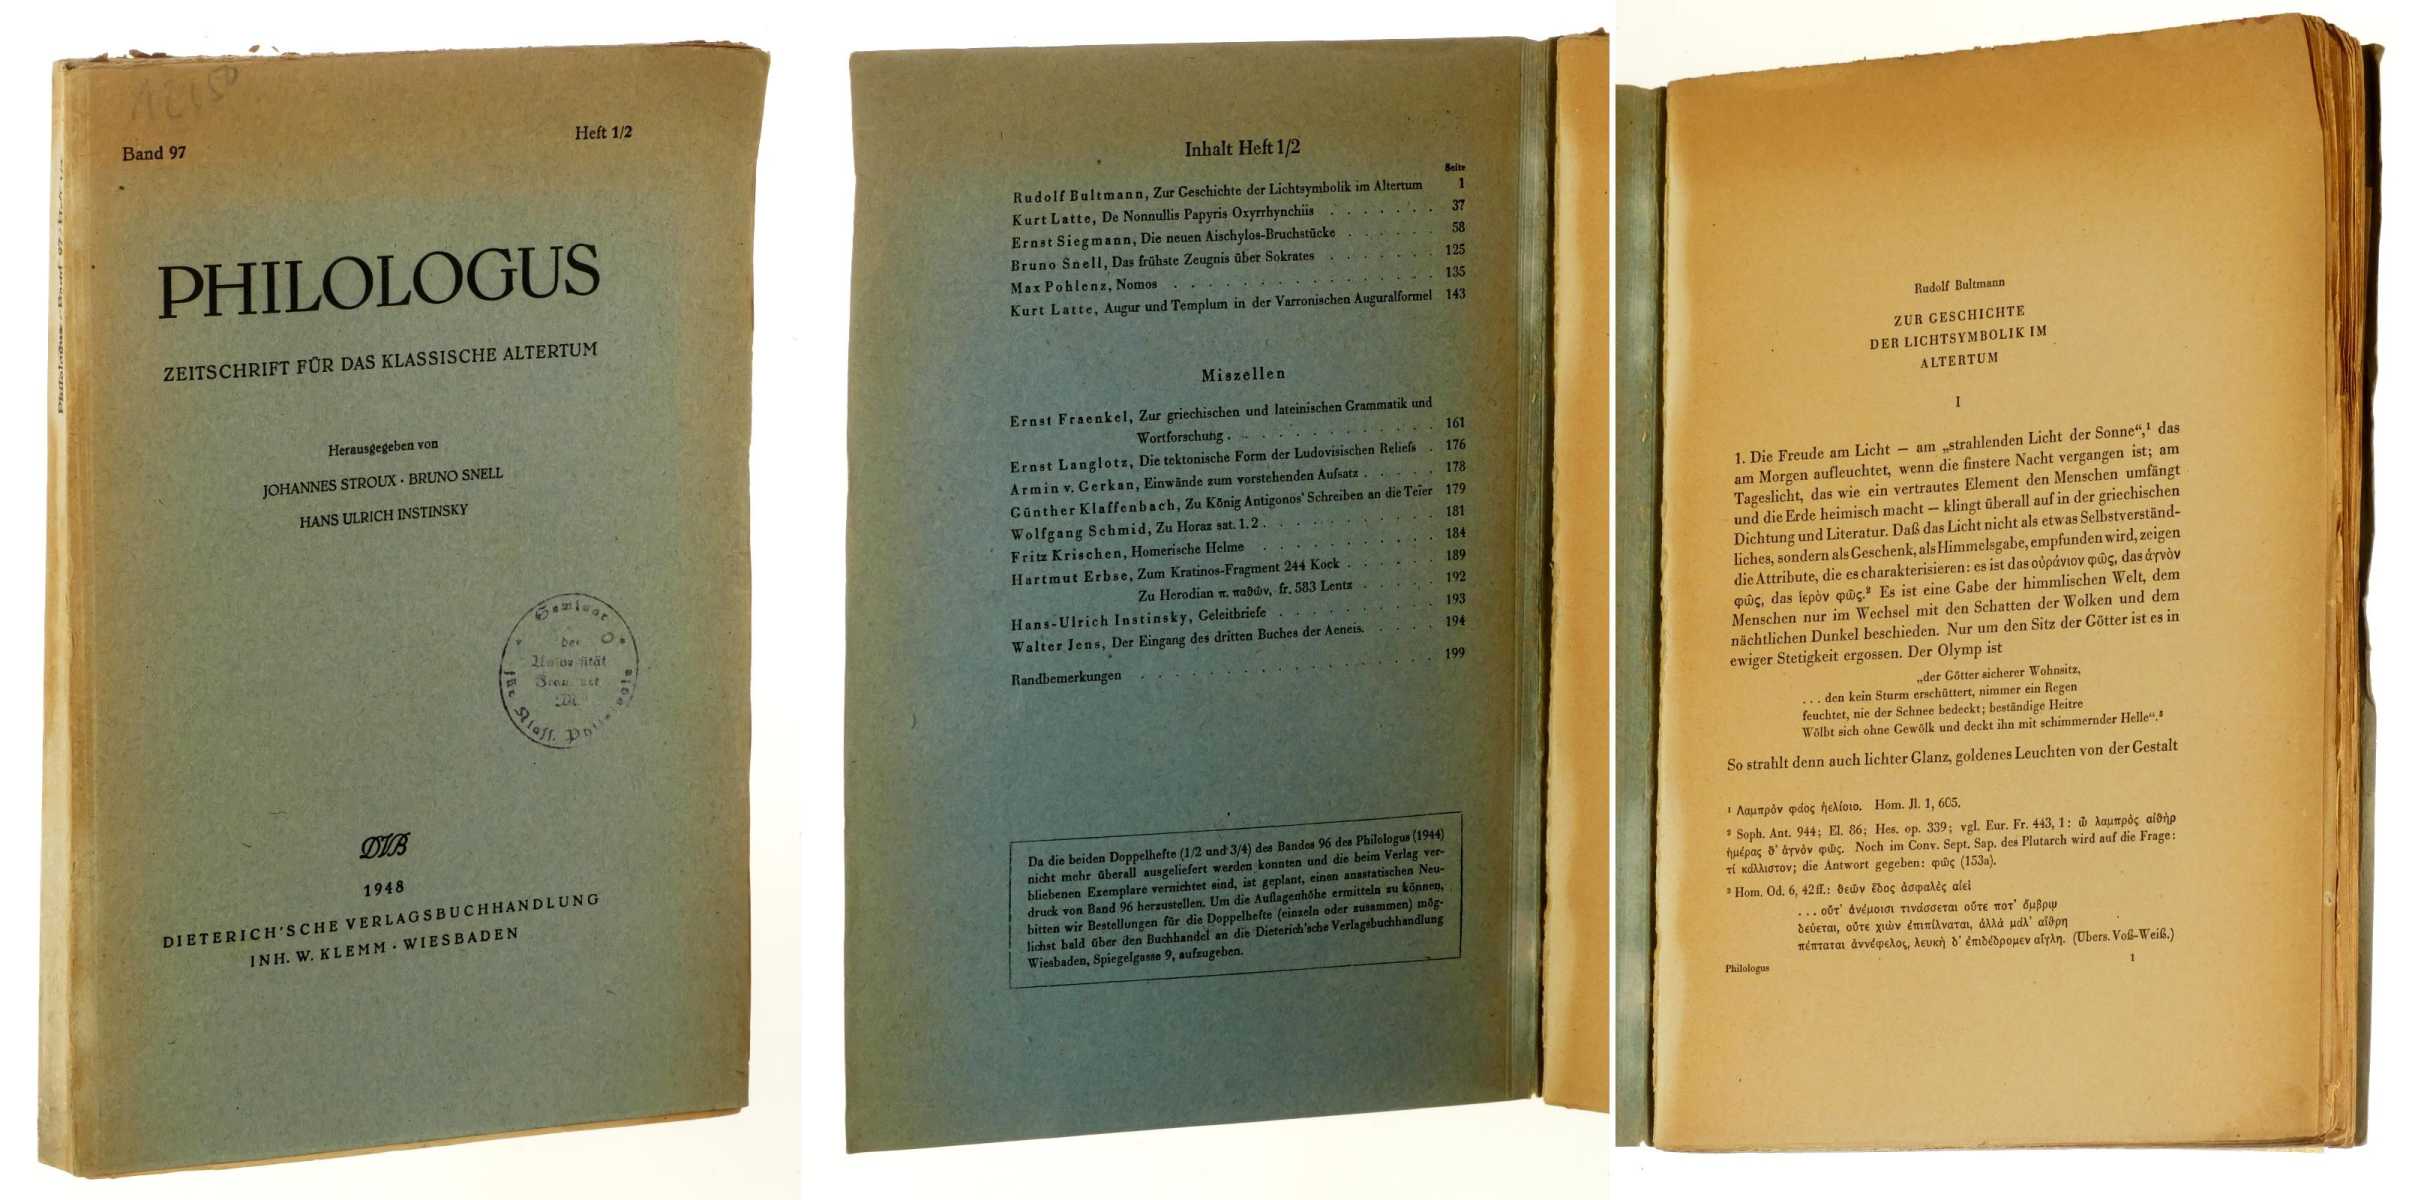   Philologus. Zeitschrift für das klassische Altertum. Band 97, Heft 1/2. Hrsg. von Johannes Stroux, Bruno Snell, Hans Ulrich Instinsky. 